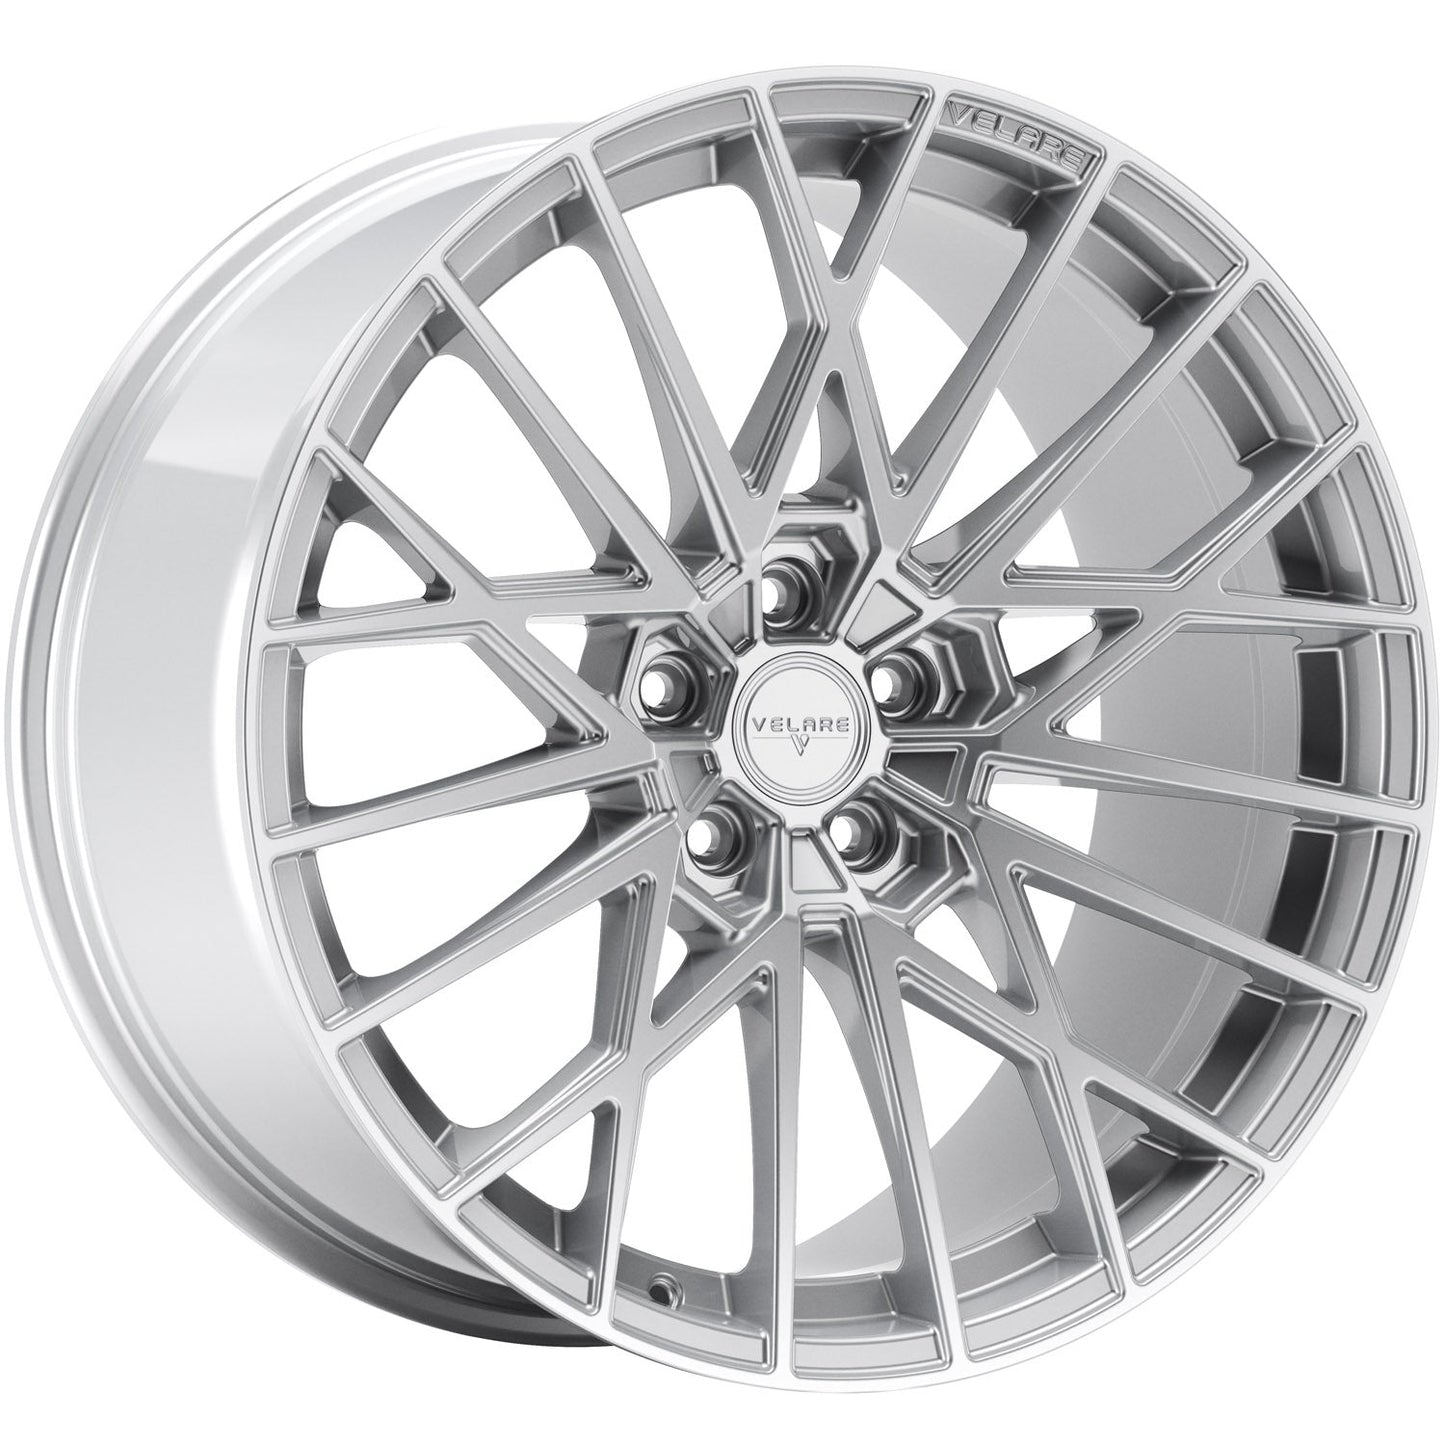 Velare-VLR07-Iridium-Silver-Silver-20x8.5-72.6-wheels-rims-felger-Felghuset